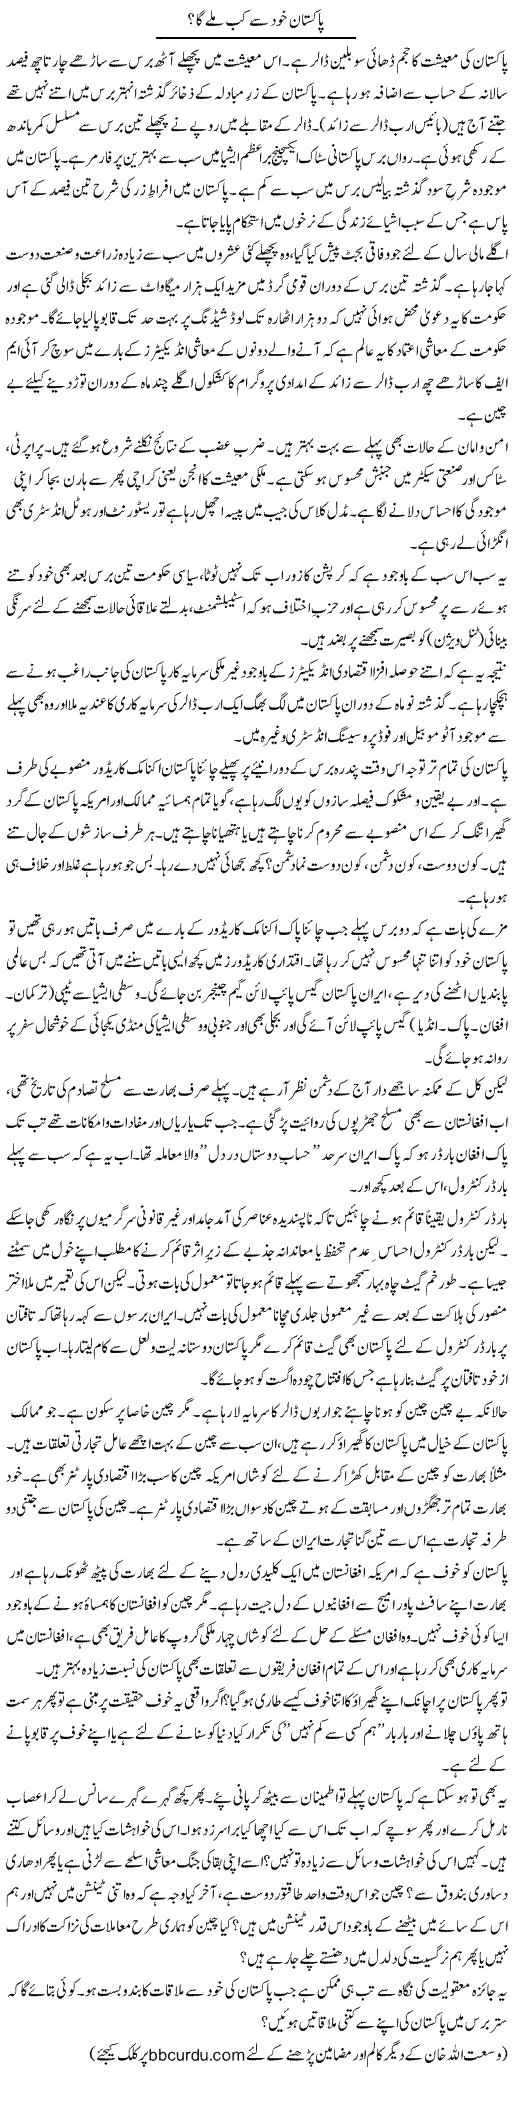 Pakistan khud se kab milay ga? | Wusat Ullah Khan | Daily Urdu Columns